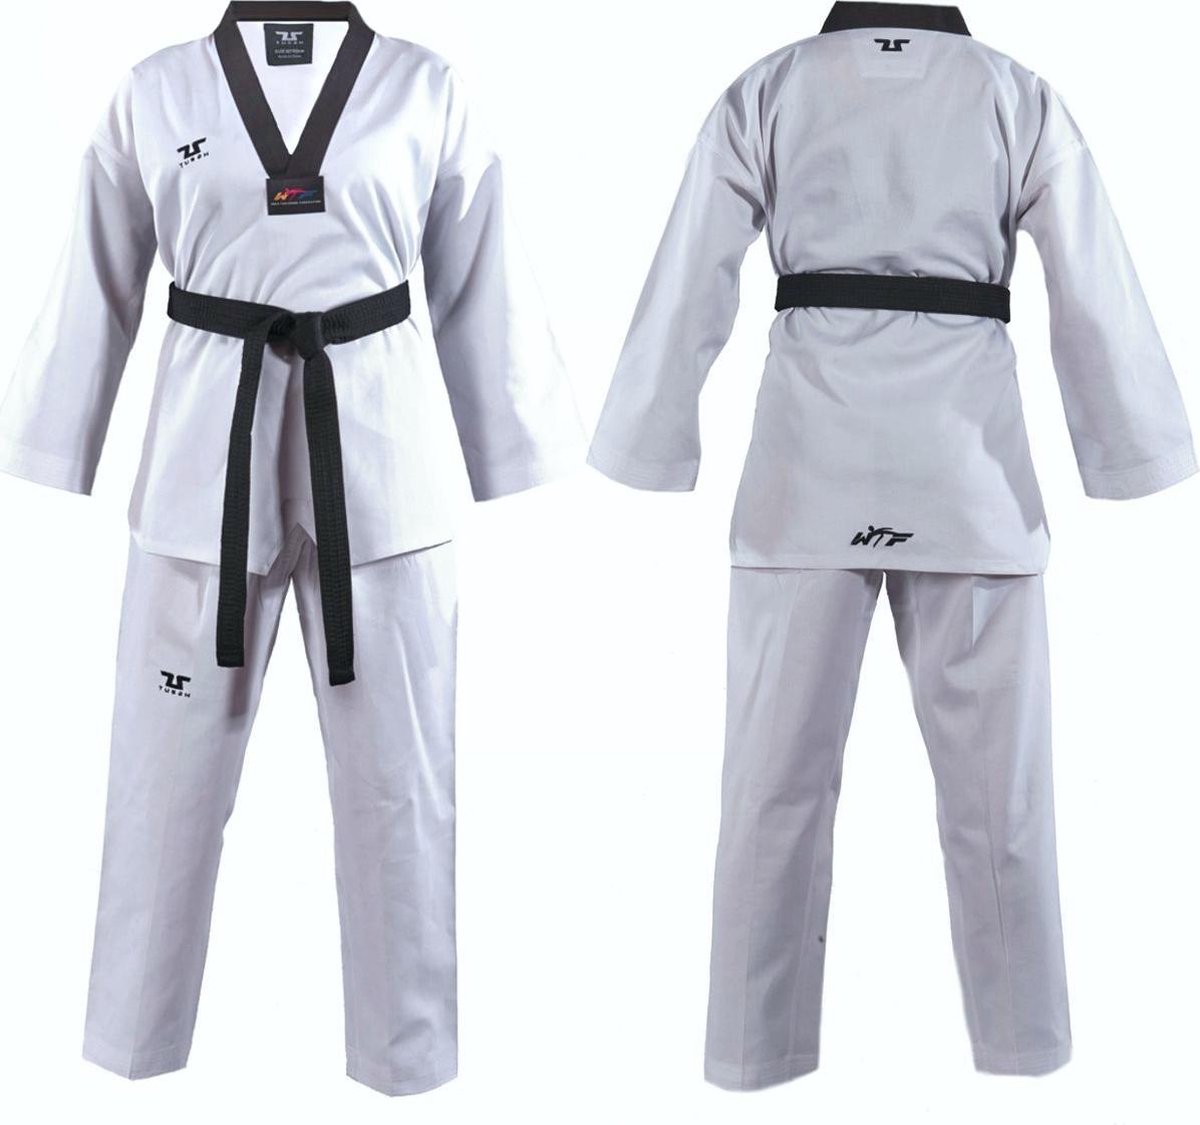 Tusah WTF Taekwondo Pak Plain zwart 200cm